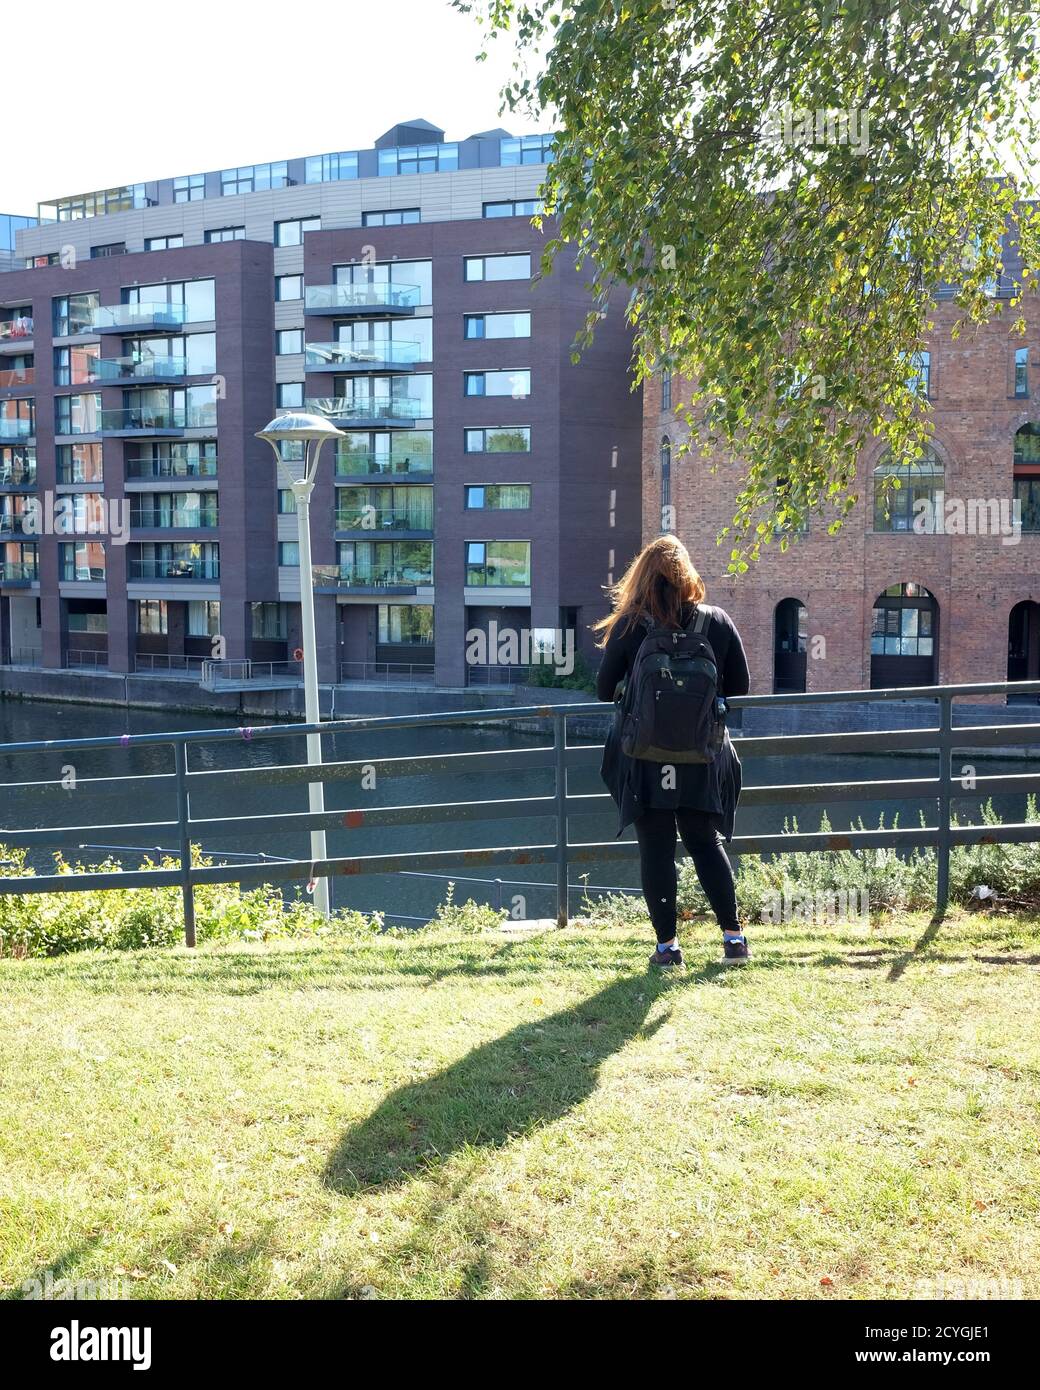 Ottobre 2020 - la donna dai capelli lunghi con il gazing delle ombre ai nuovi Finzels raggiunge lo sviluppo di proprietà nella città di Bristol, Inghilterra, Regno Unito Foto Stock